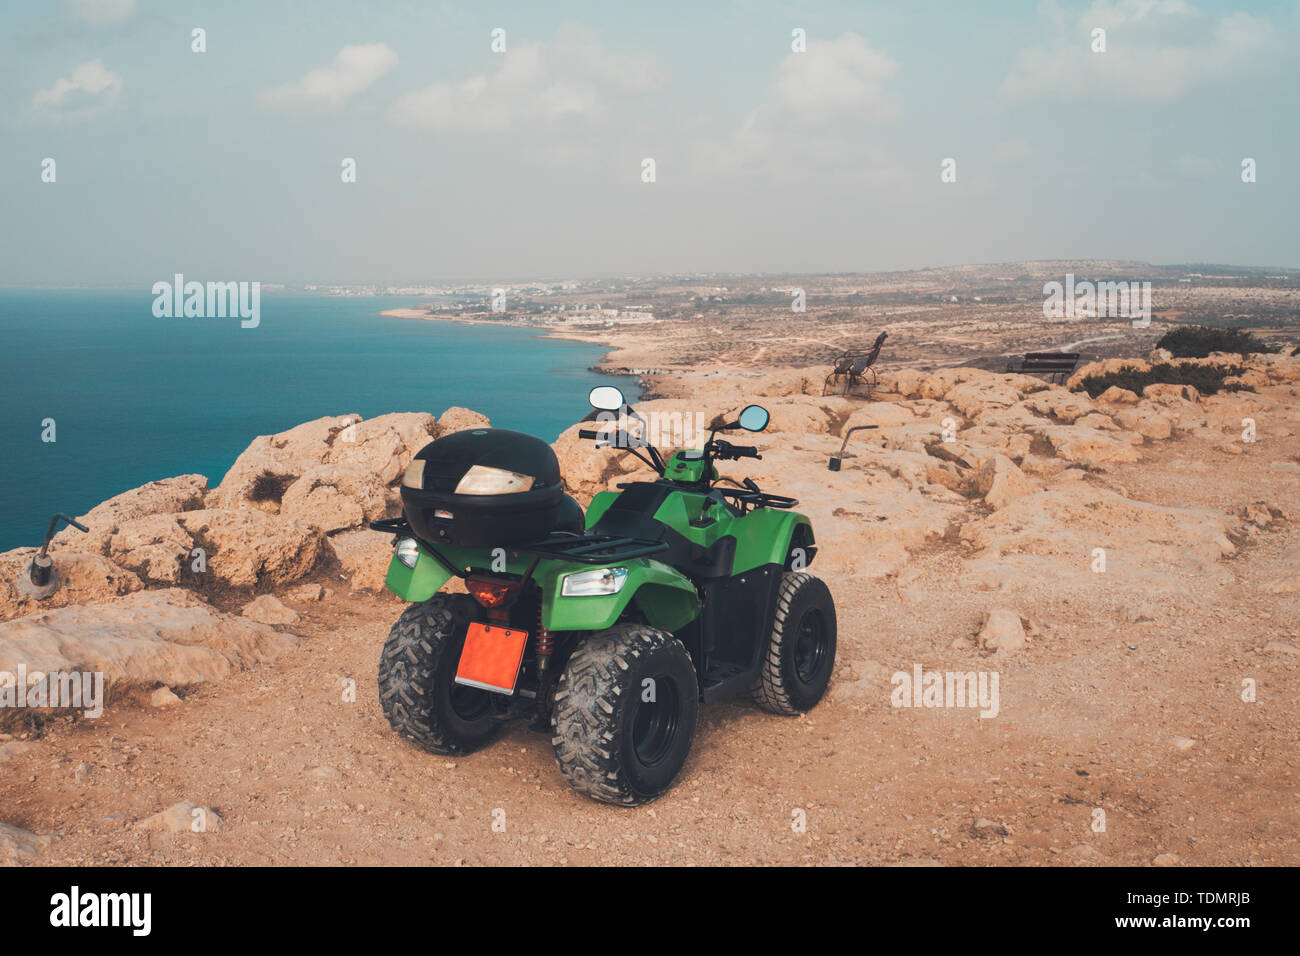 Grüne ATV Offroad auf Meer und Himmel Hintergrund. Zypern Ayia Napa. quad bike zum Mieten für die Unterhaltung der Touristen. Off-road-Fahren in der Wüste Stockfoto